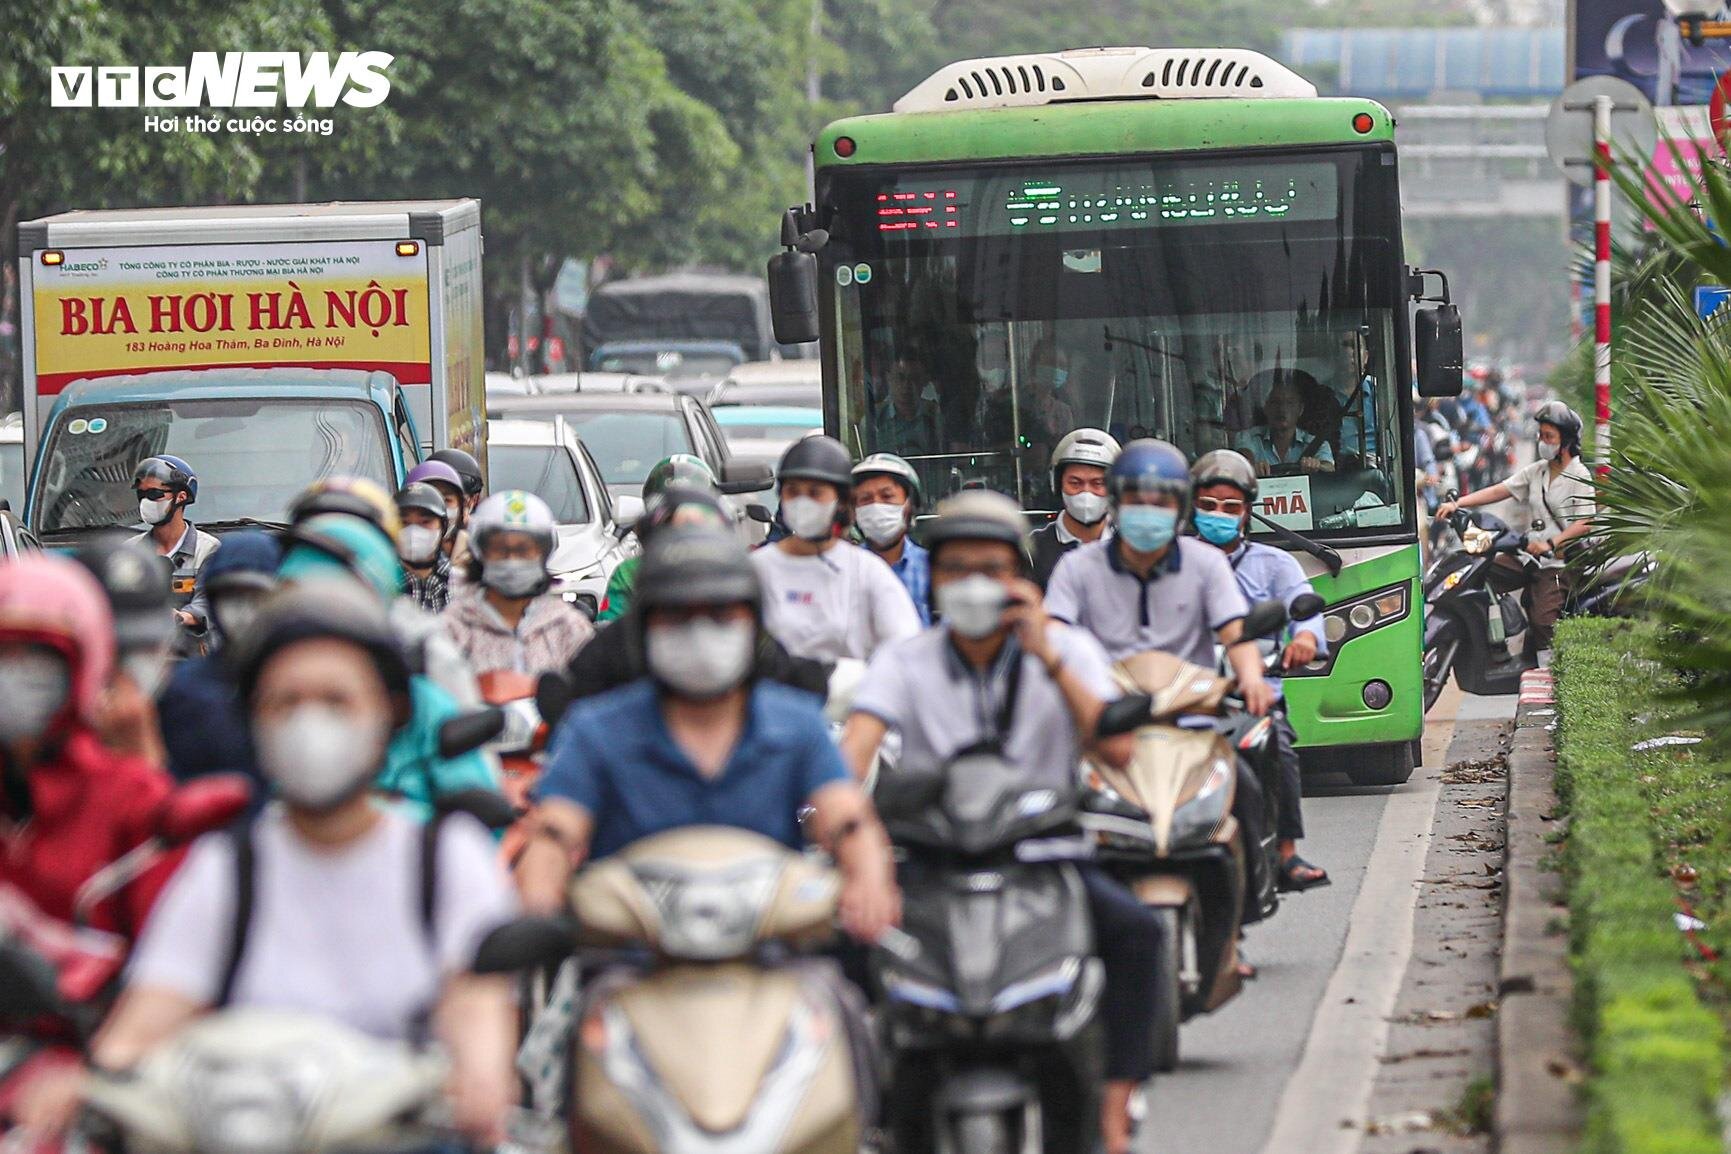 Bị cướp làn đường, buýt nhanh BRT chôn chân trên phố Hà Nội - 5